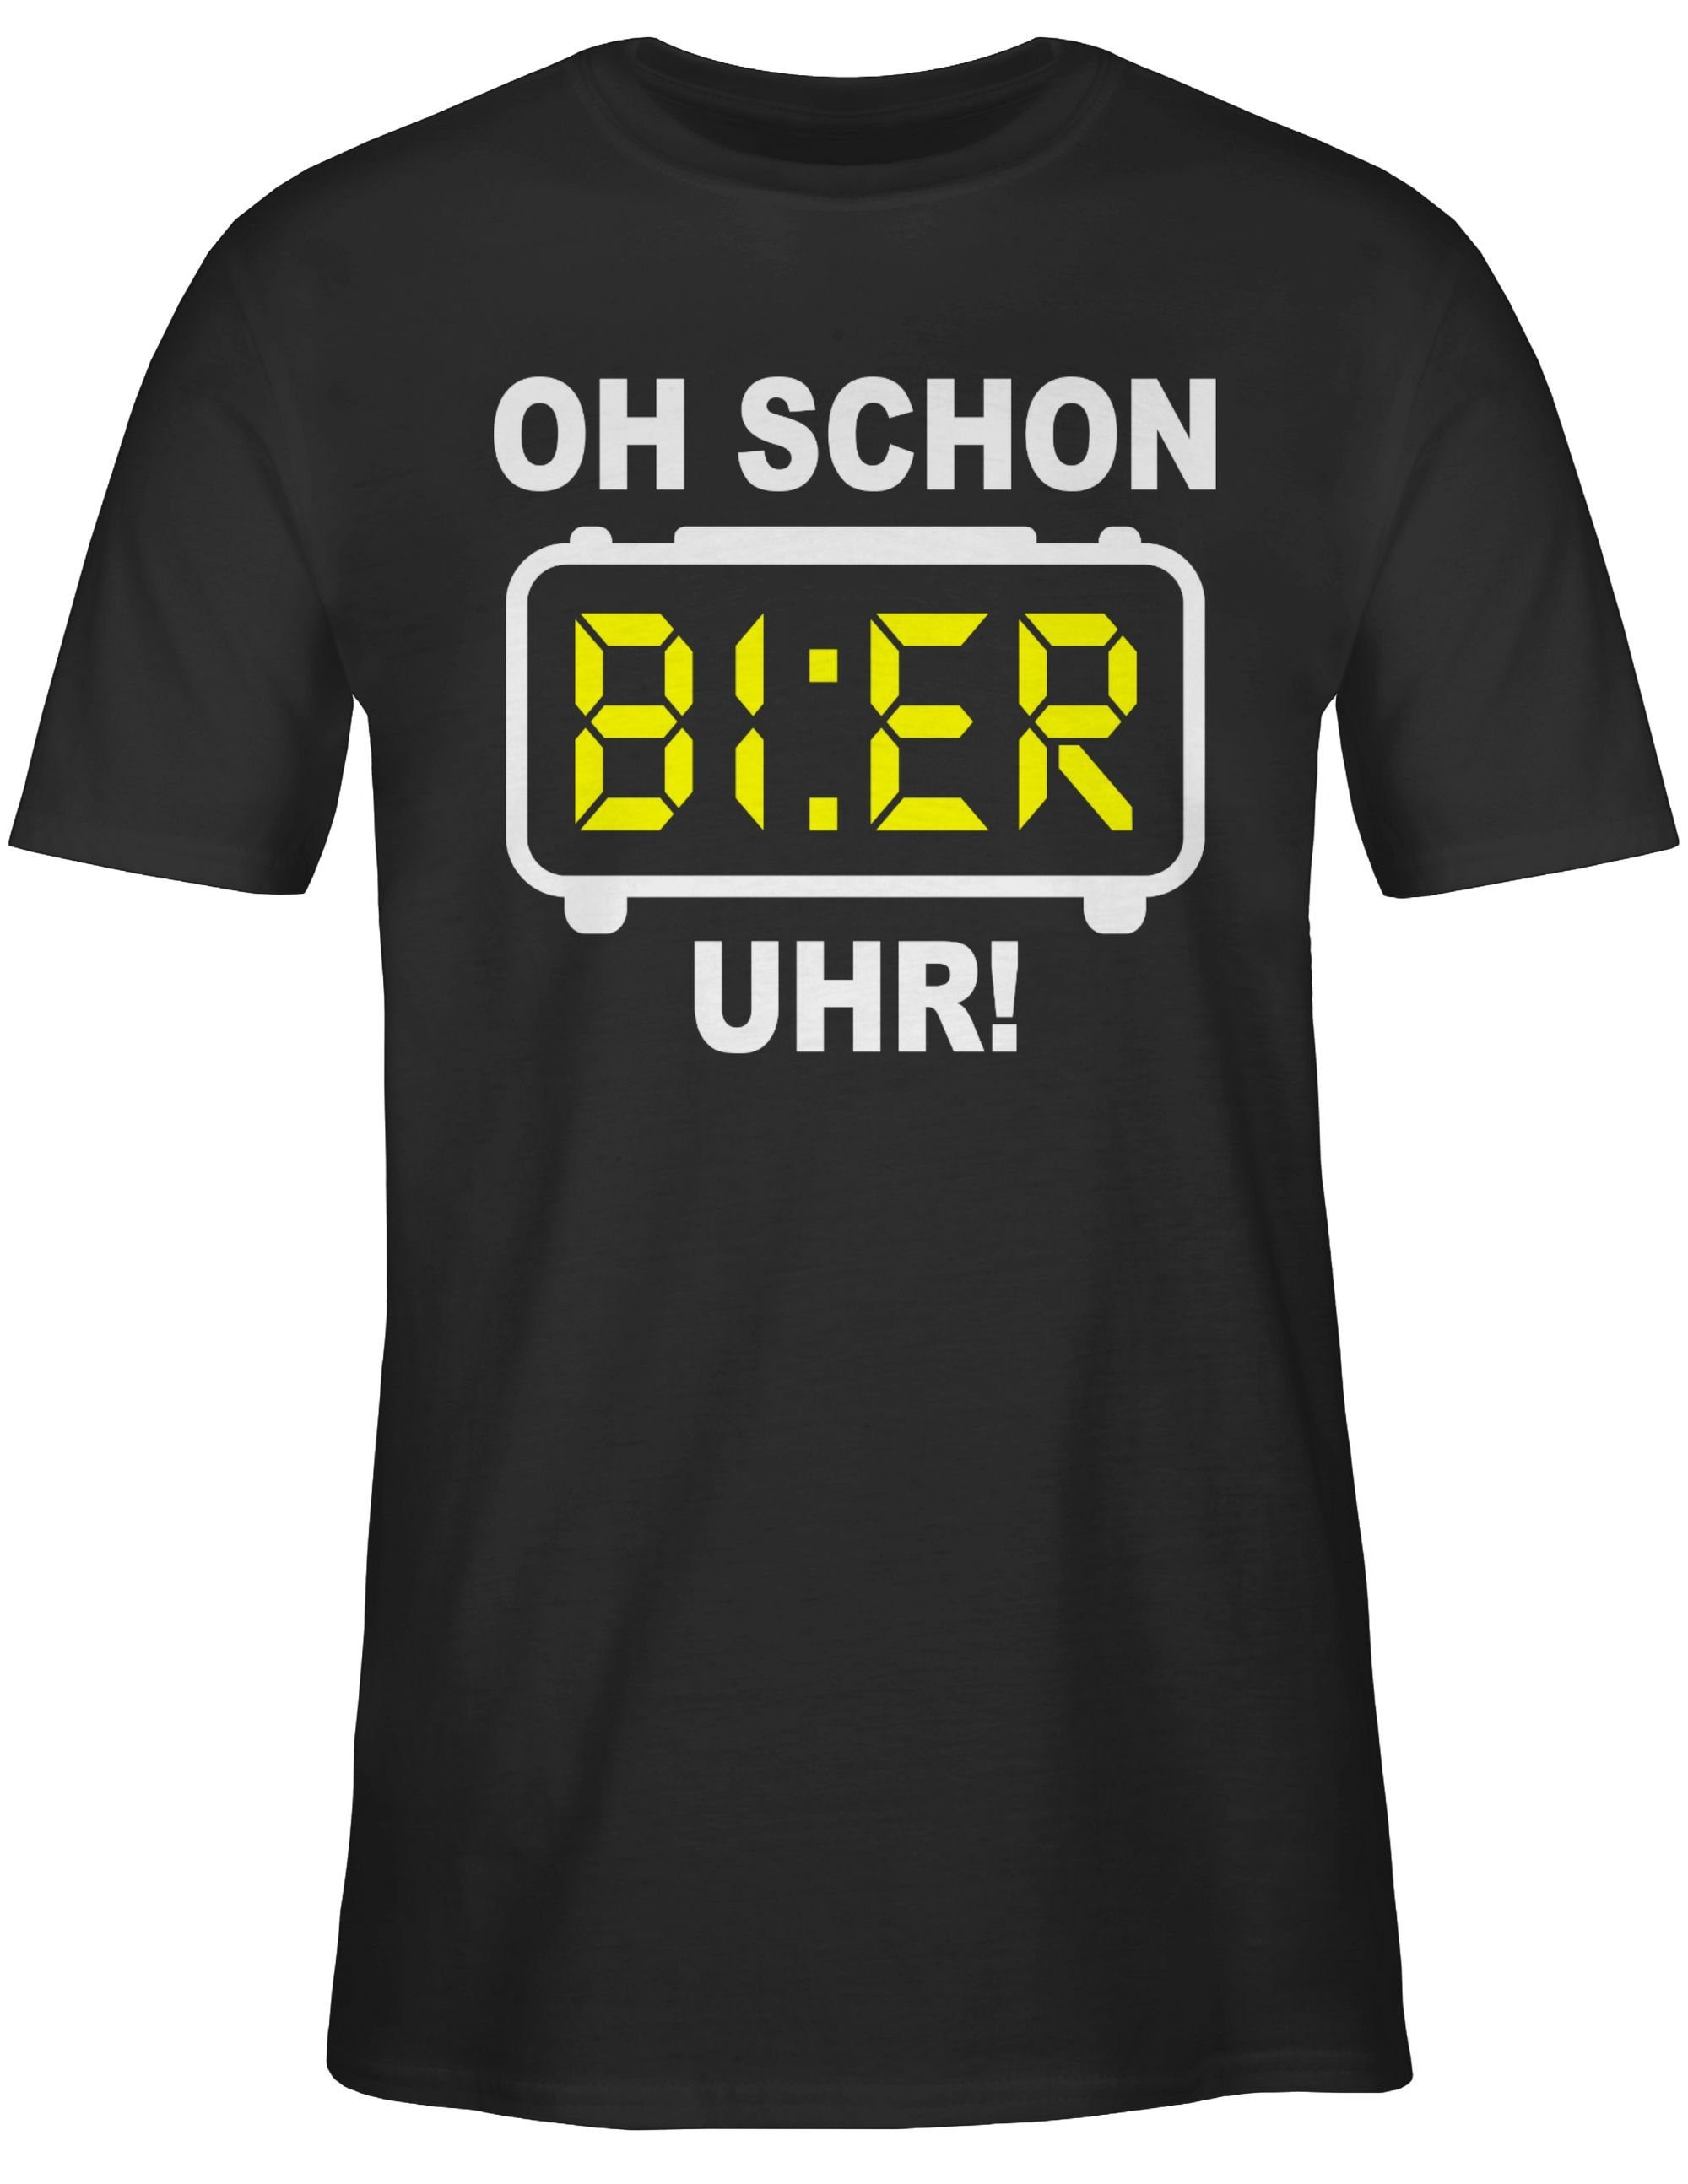 Alkohol Schwarz Weiß Oh Party Bier 01 & Shirtracer Herren T-Shirt schon Uhr!